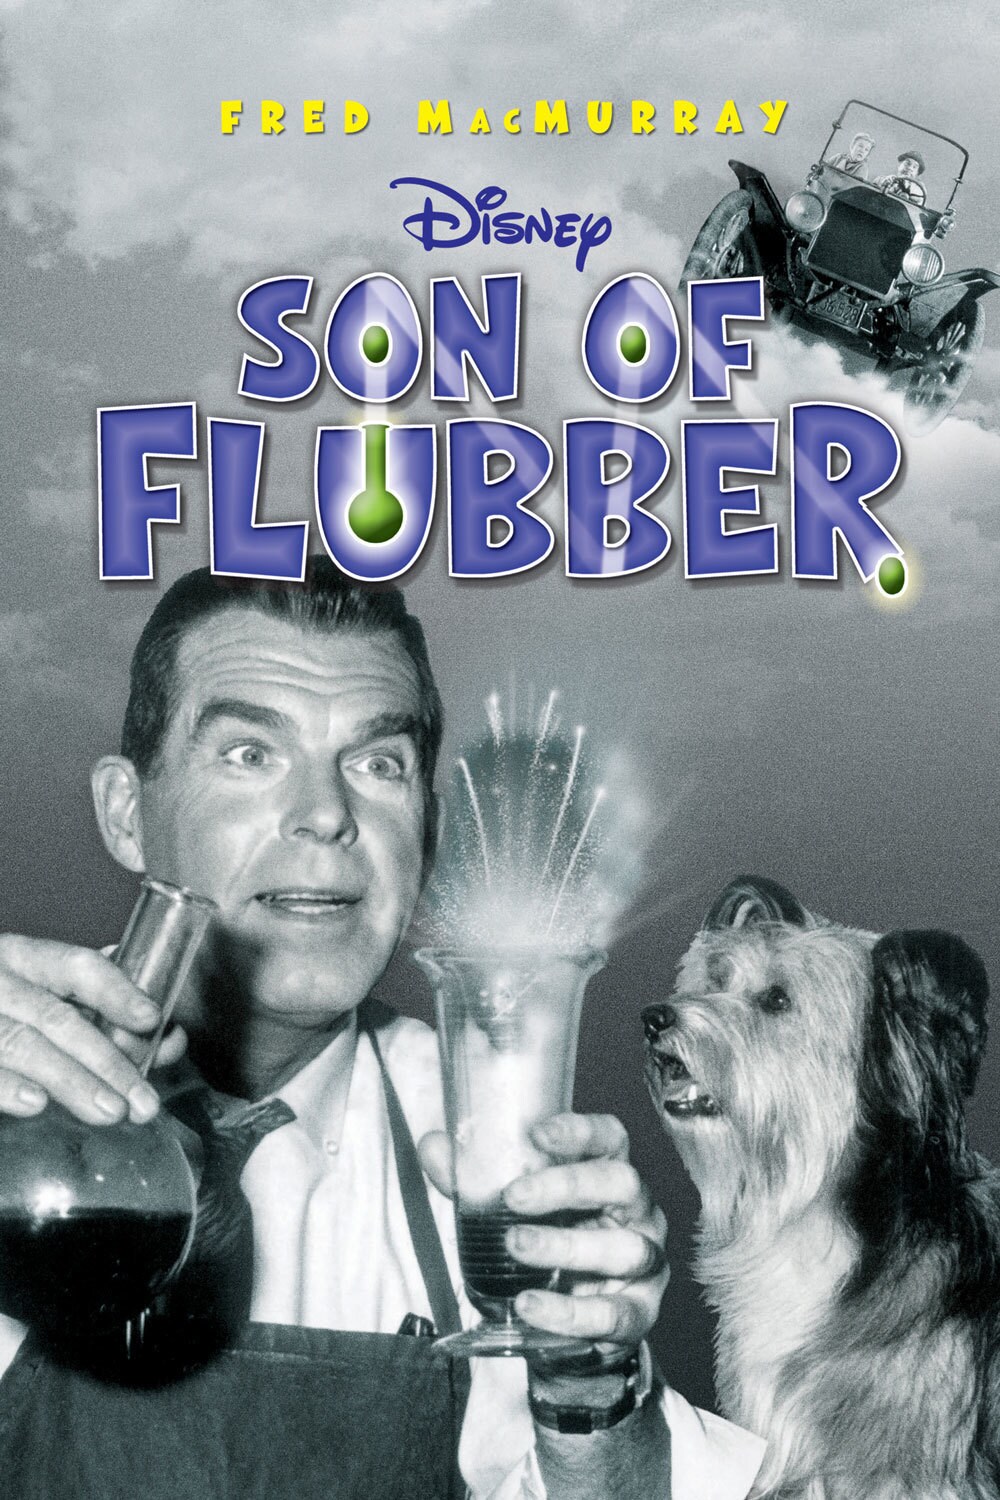 flubber full movie online free